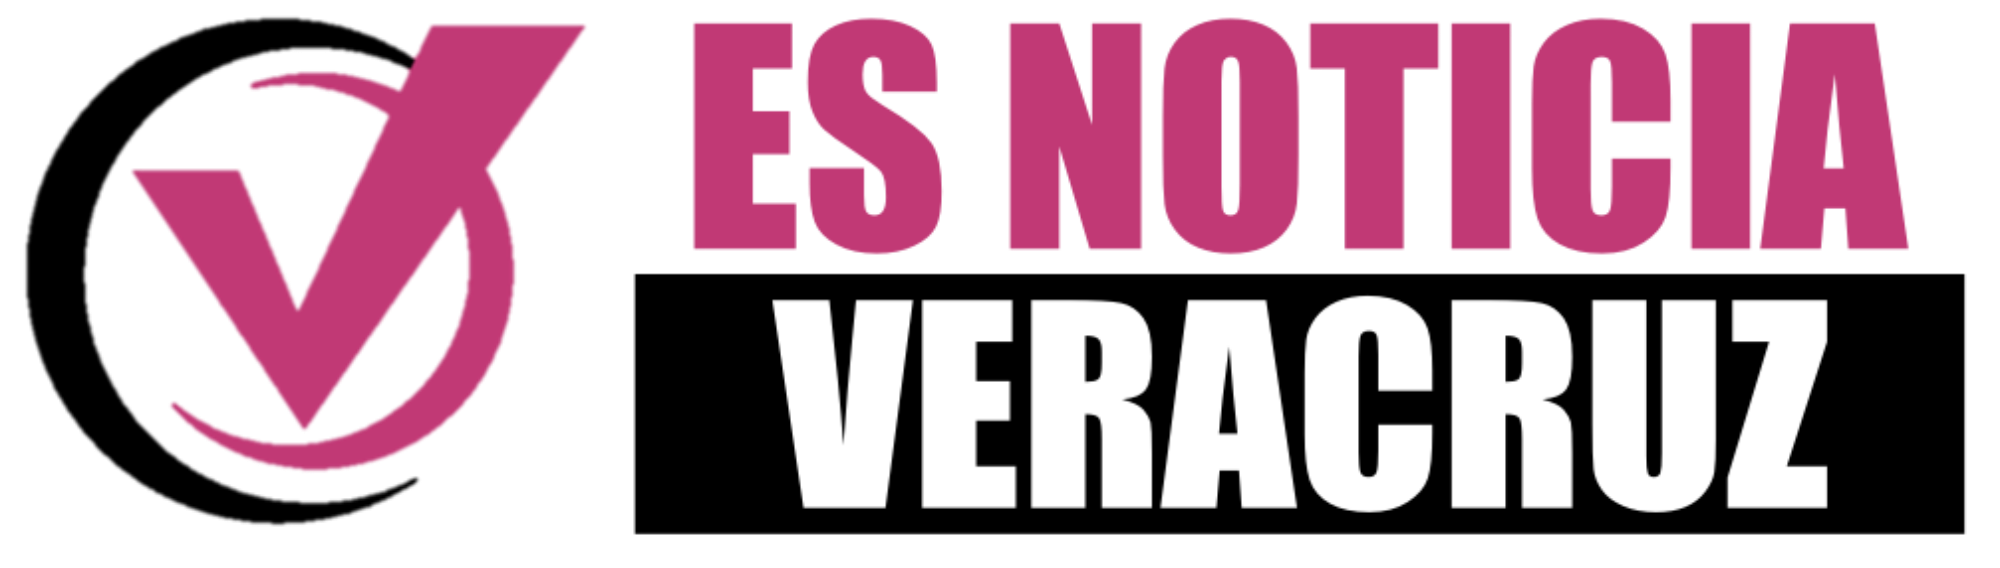 Noticias de Veracruz